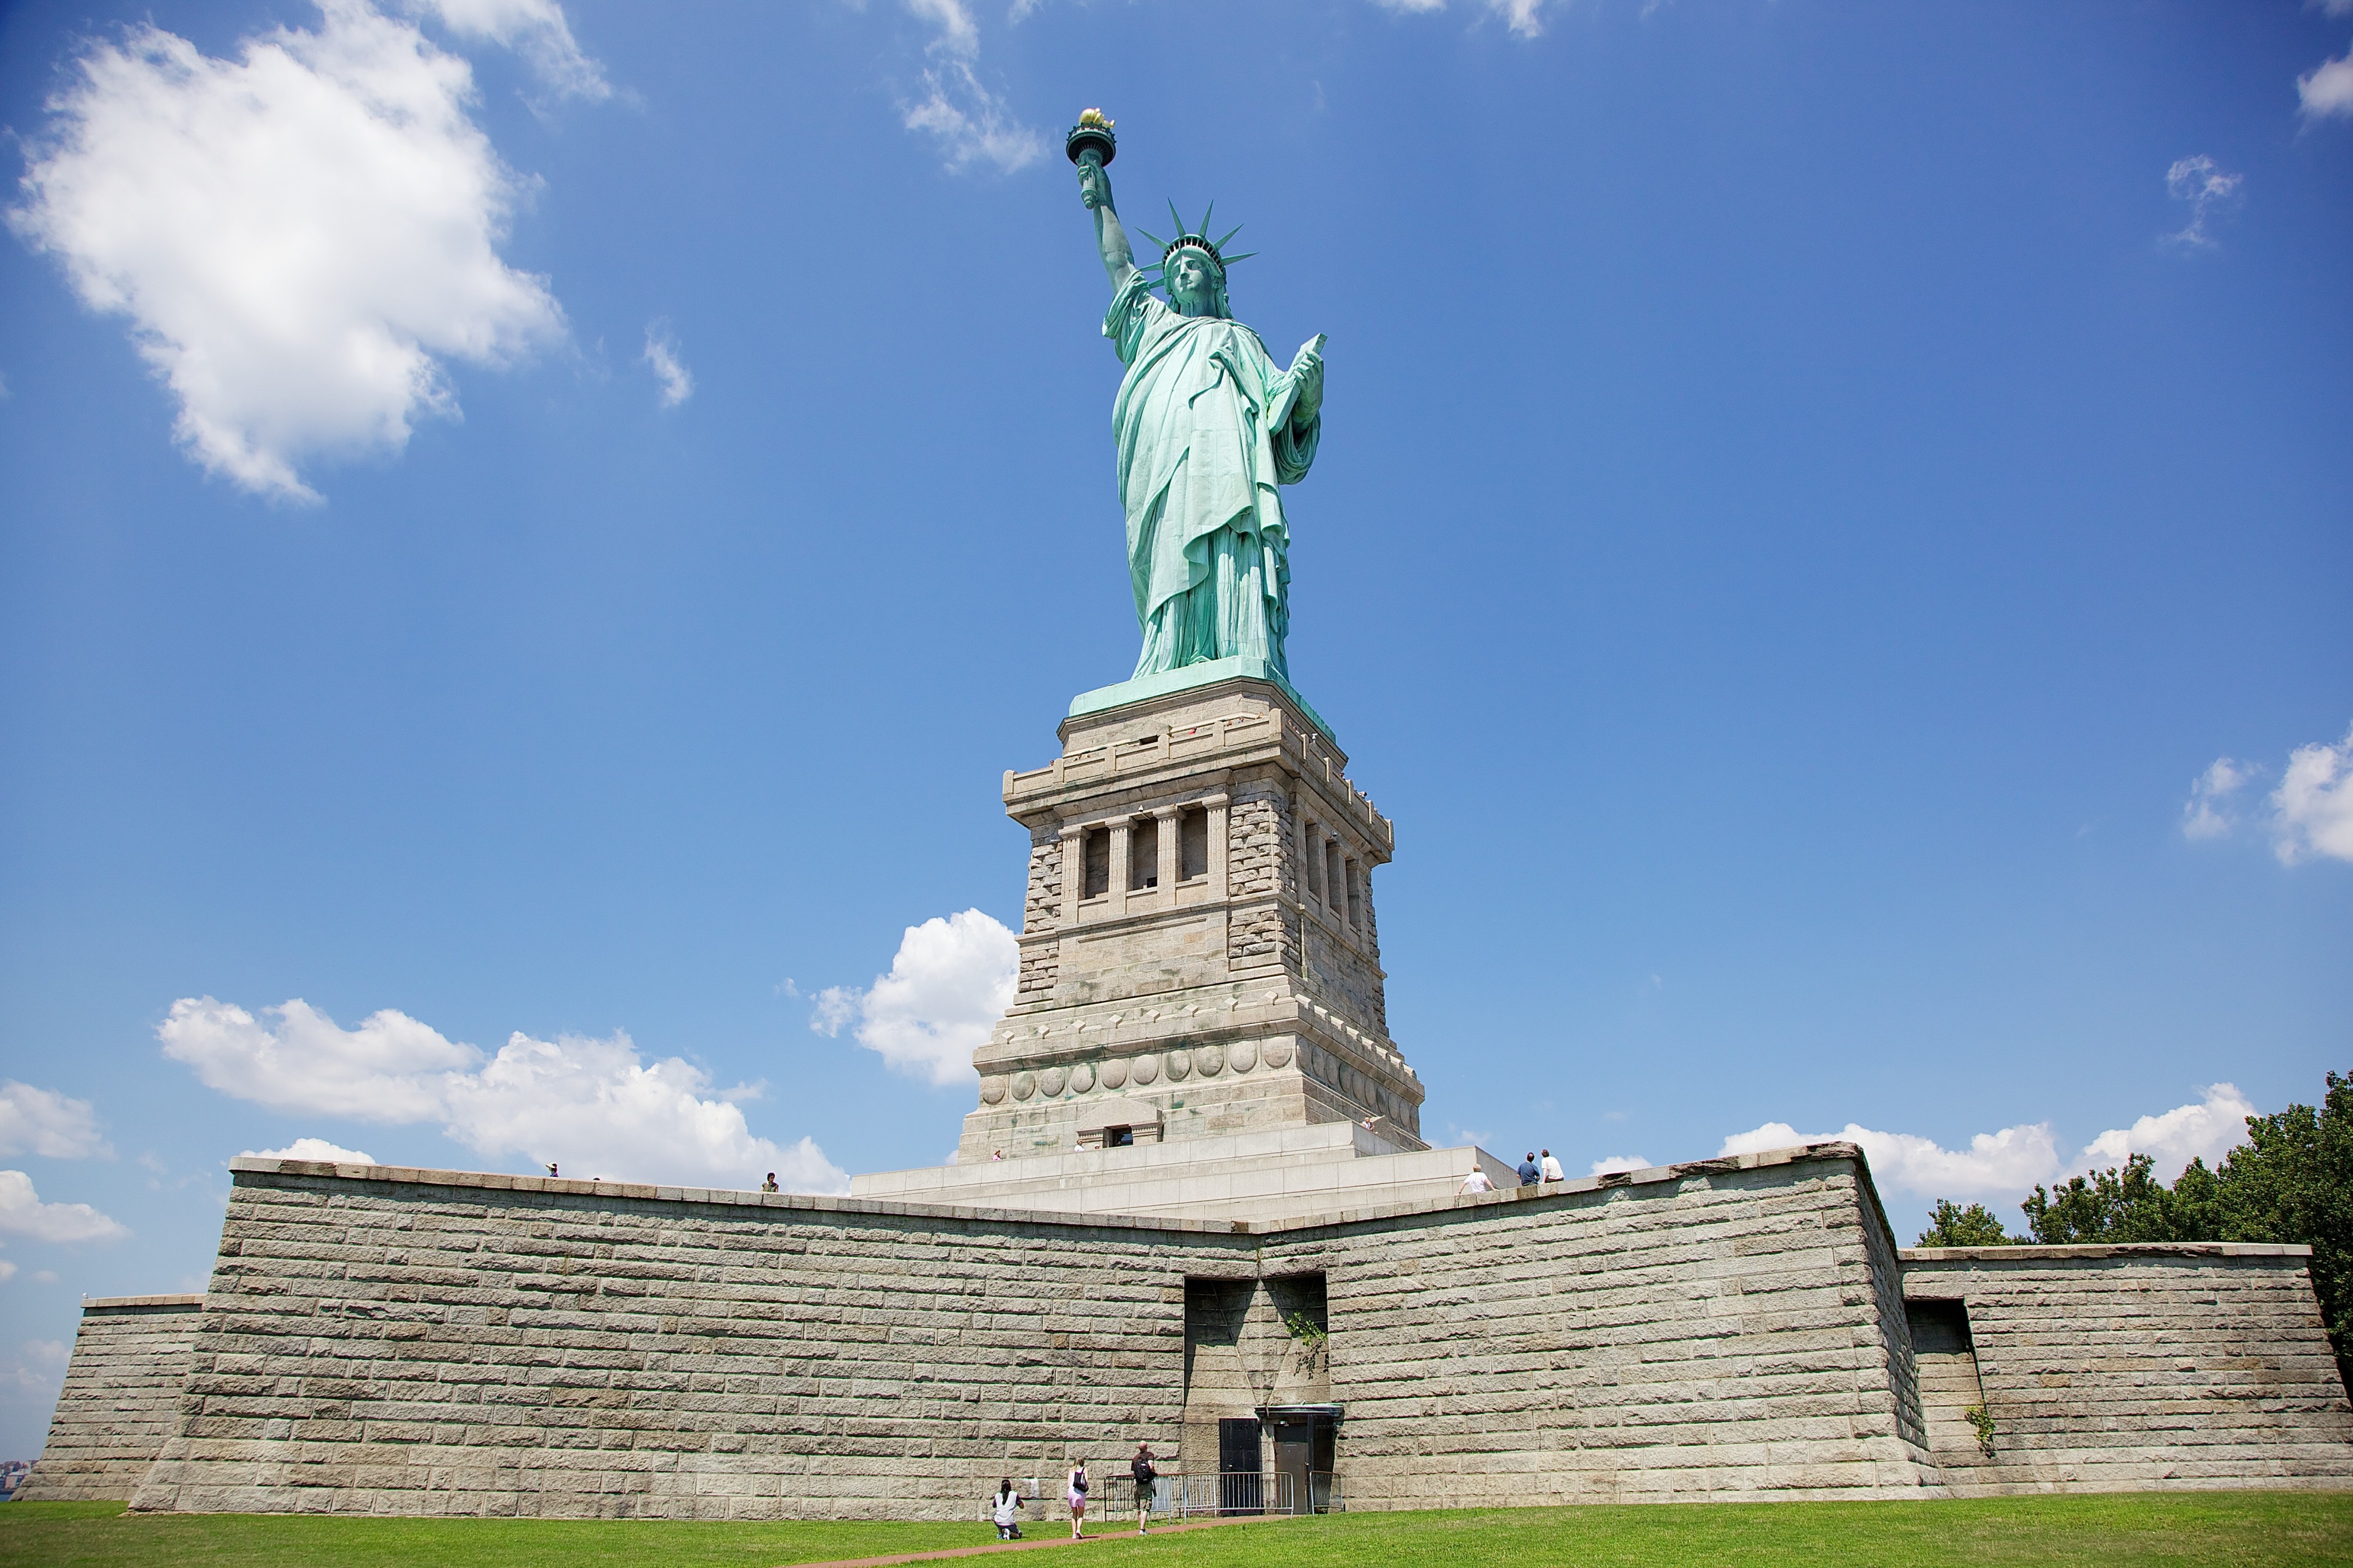 Statue of Liberty, New York, USA-30July2010